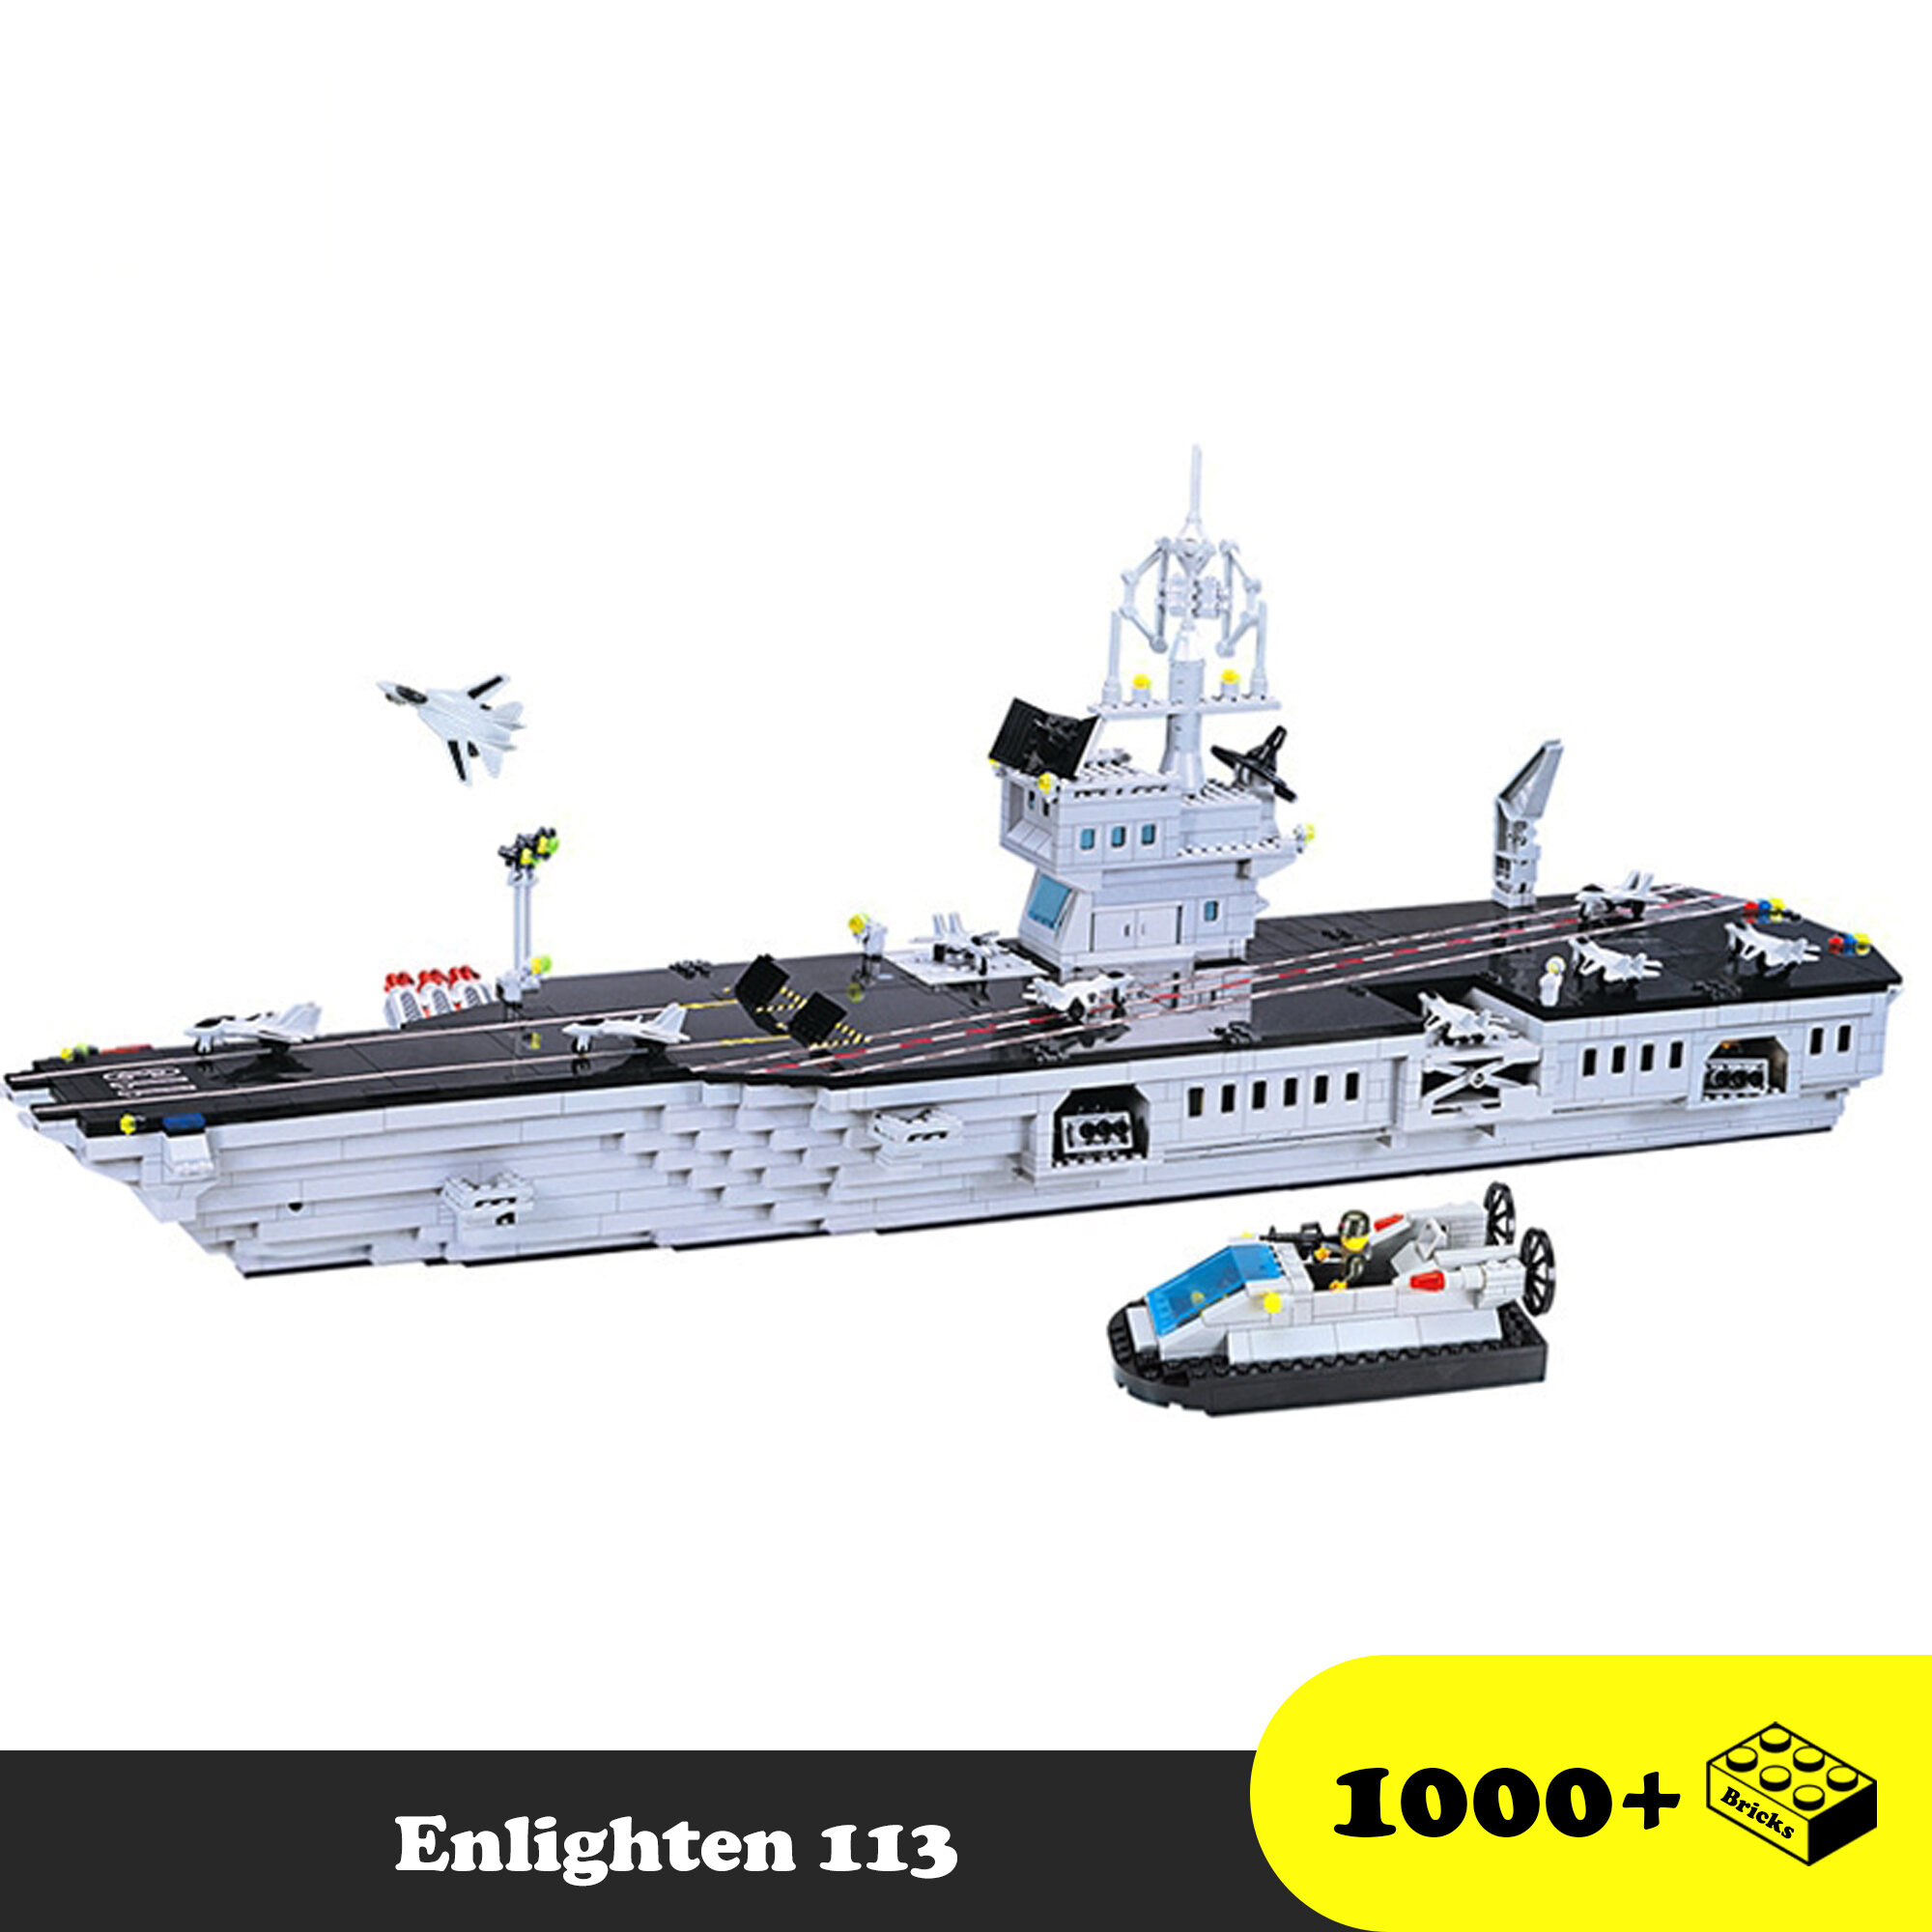 Lego Lắp Ráp Tàu Sân bay khổng lồ 113, Enlighten 113 Đồ chơi Xếp hình quân sự thuyền chiến, Mô hình quân sự [1000 mảnh ghép]